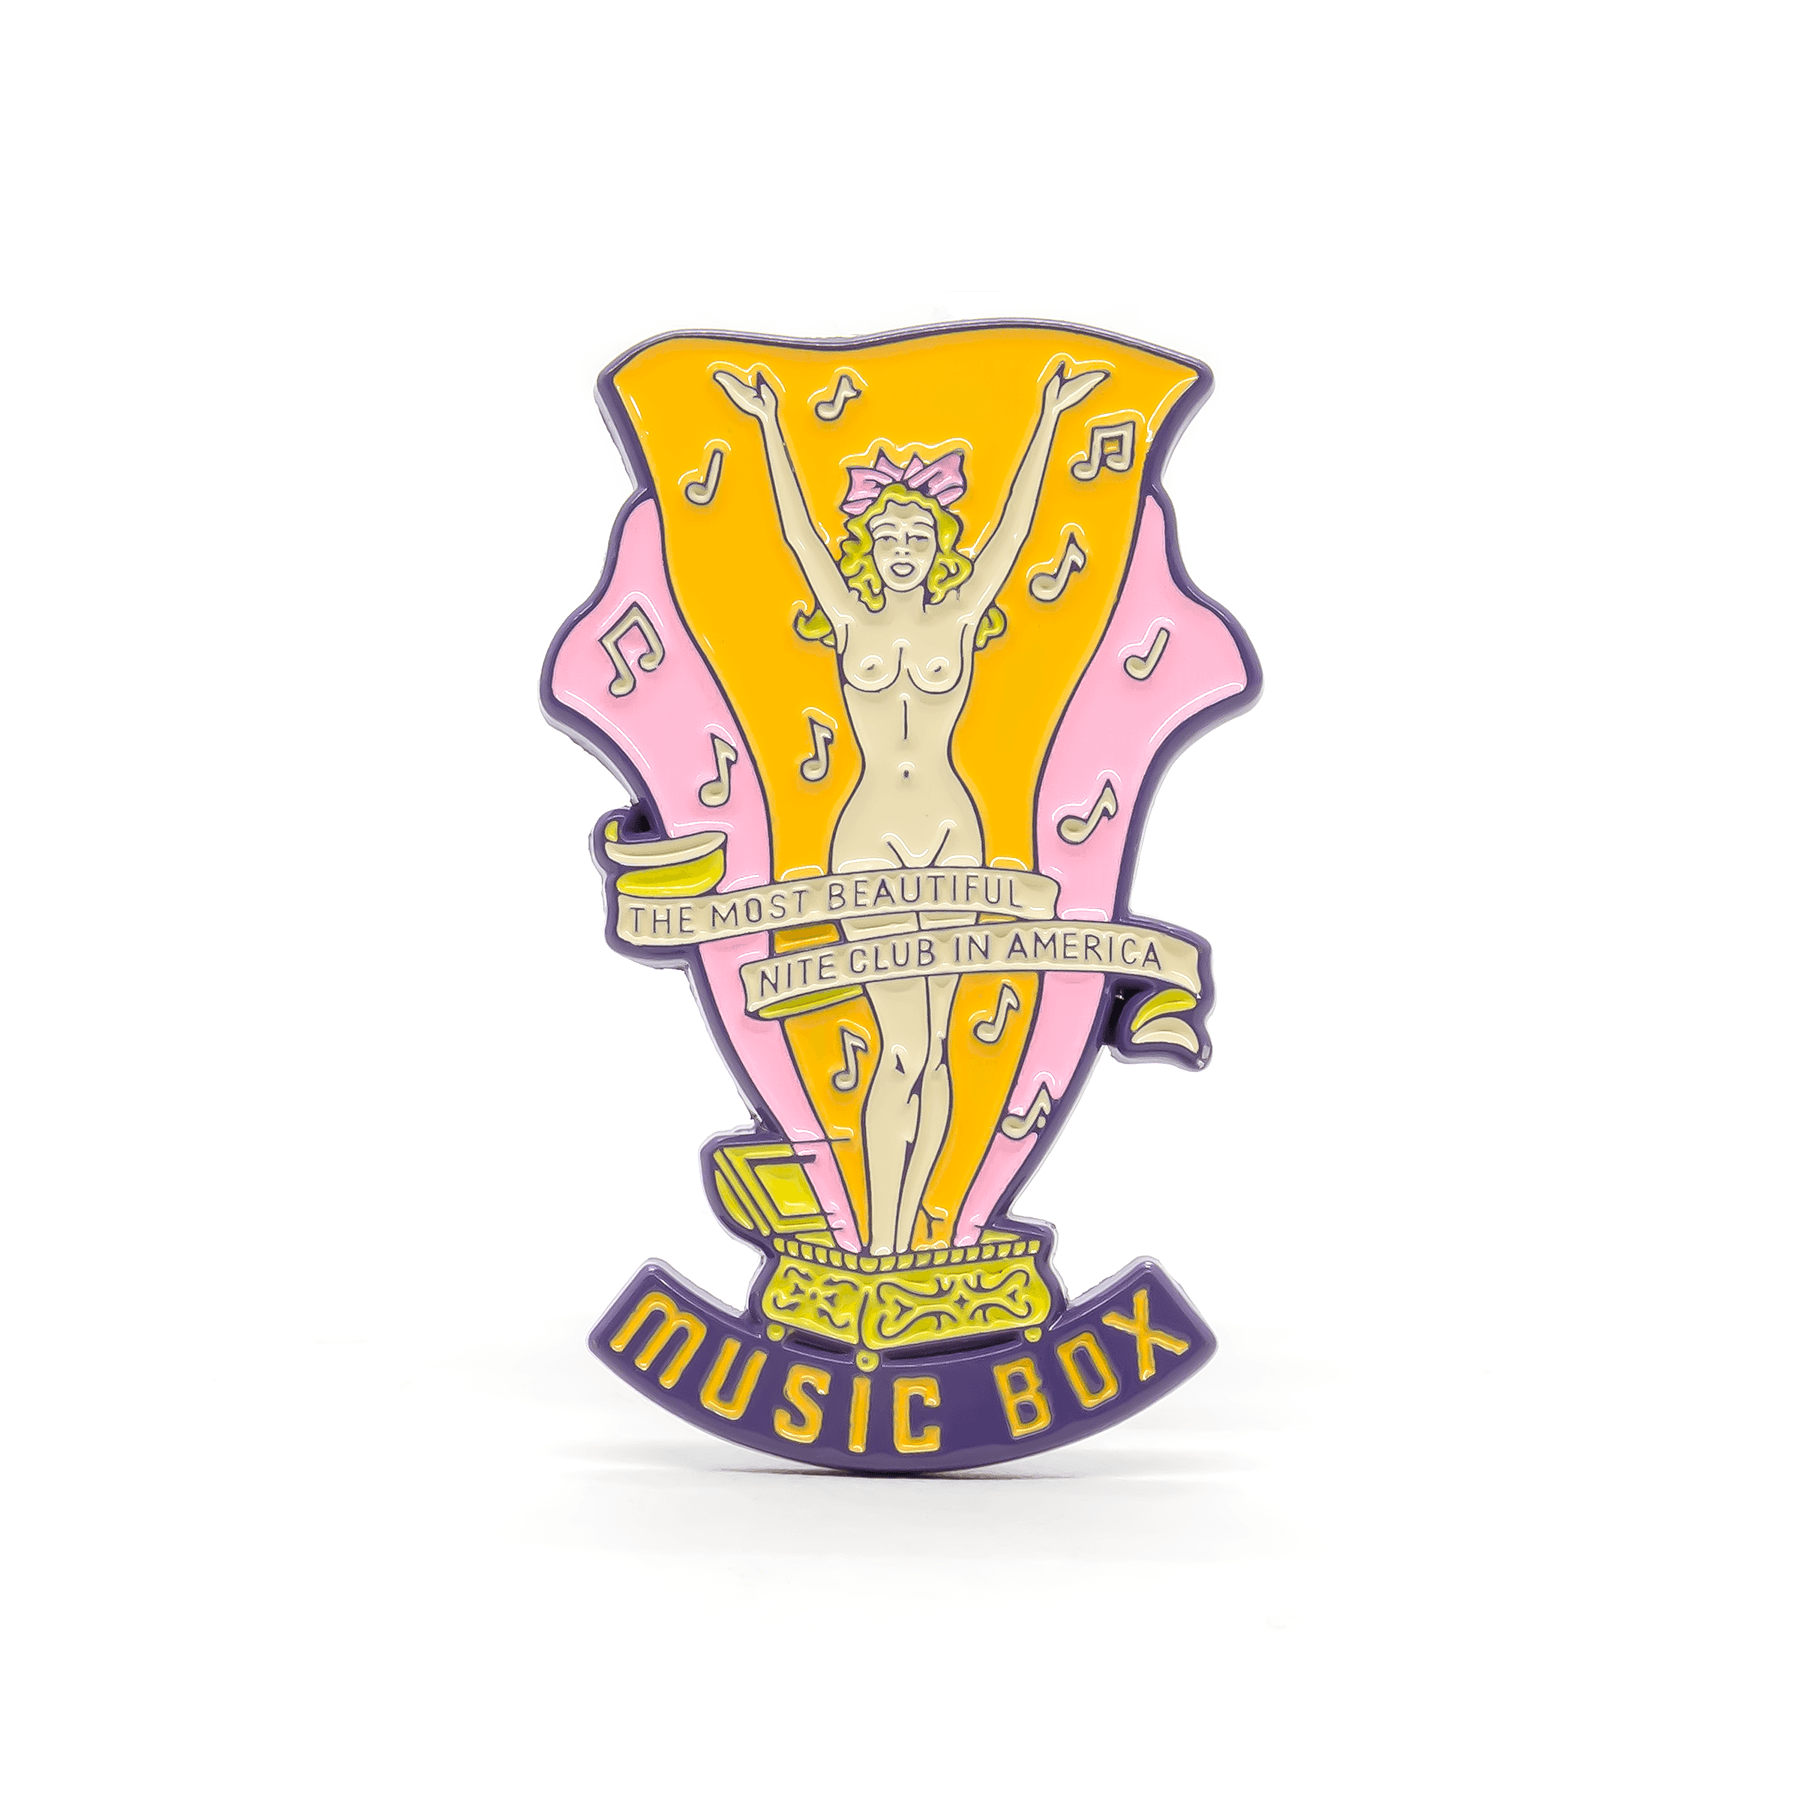 Why Not & Music Box enamel pin set